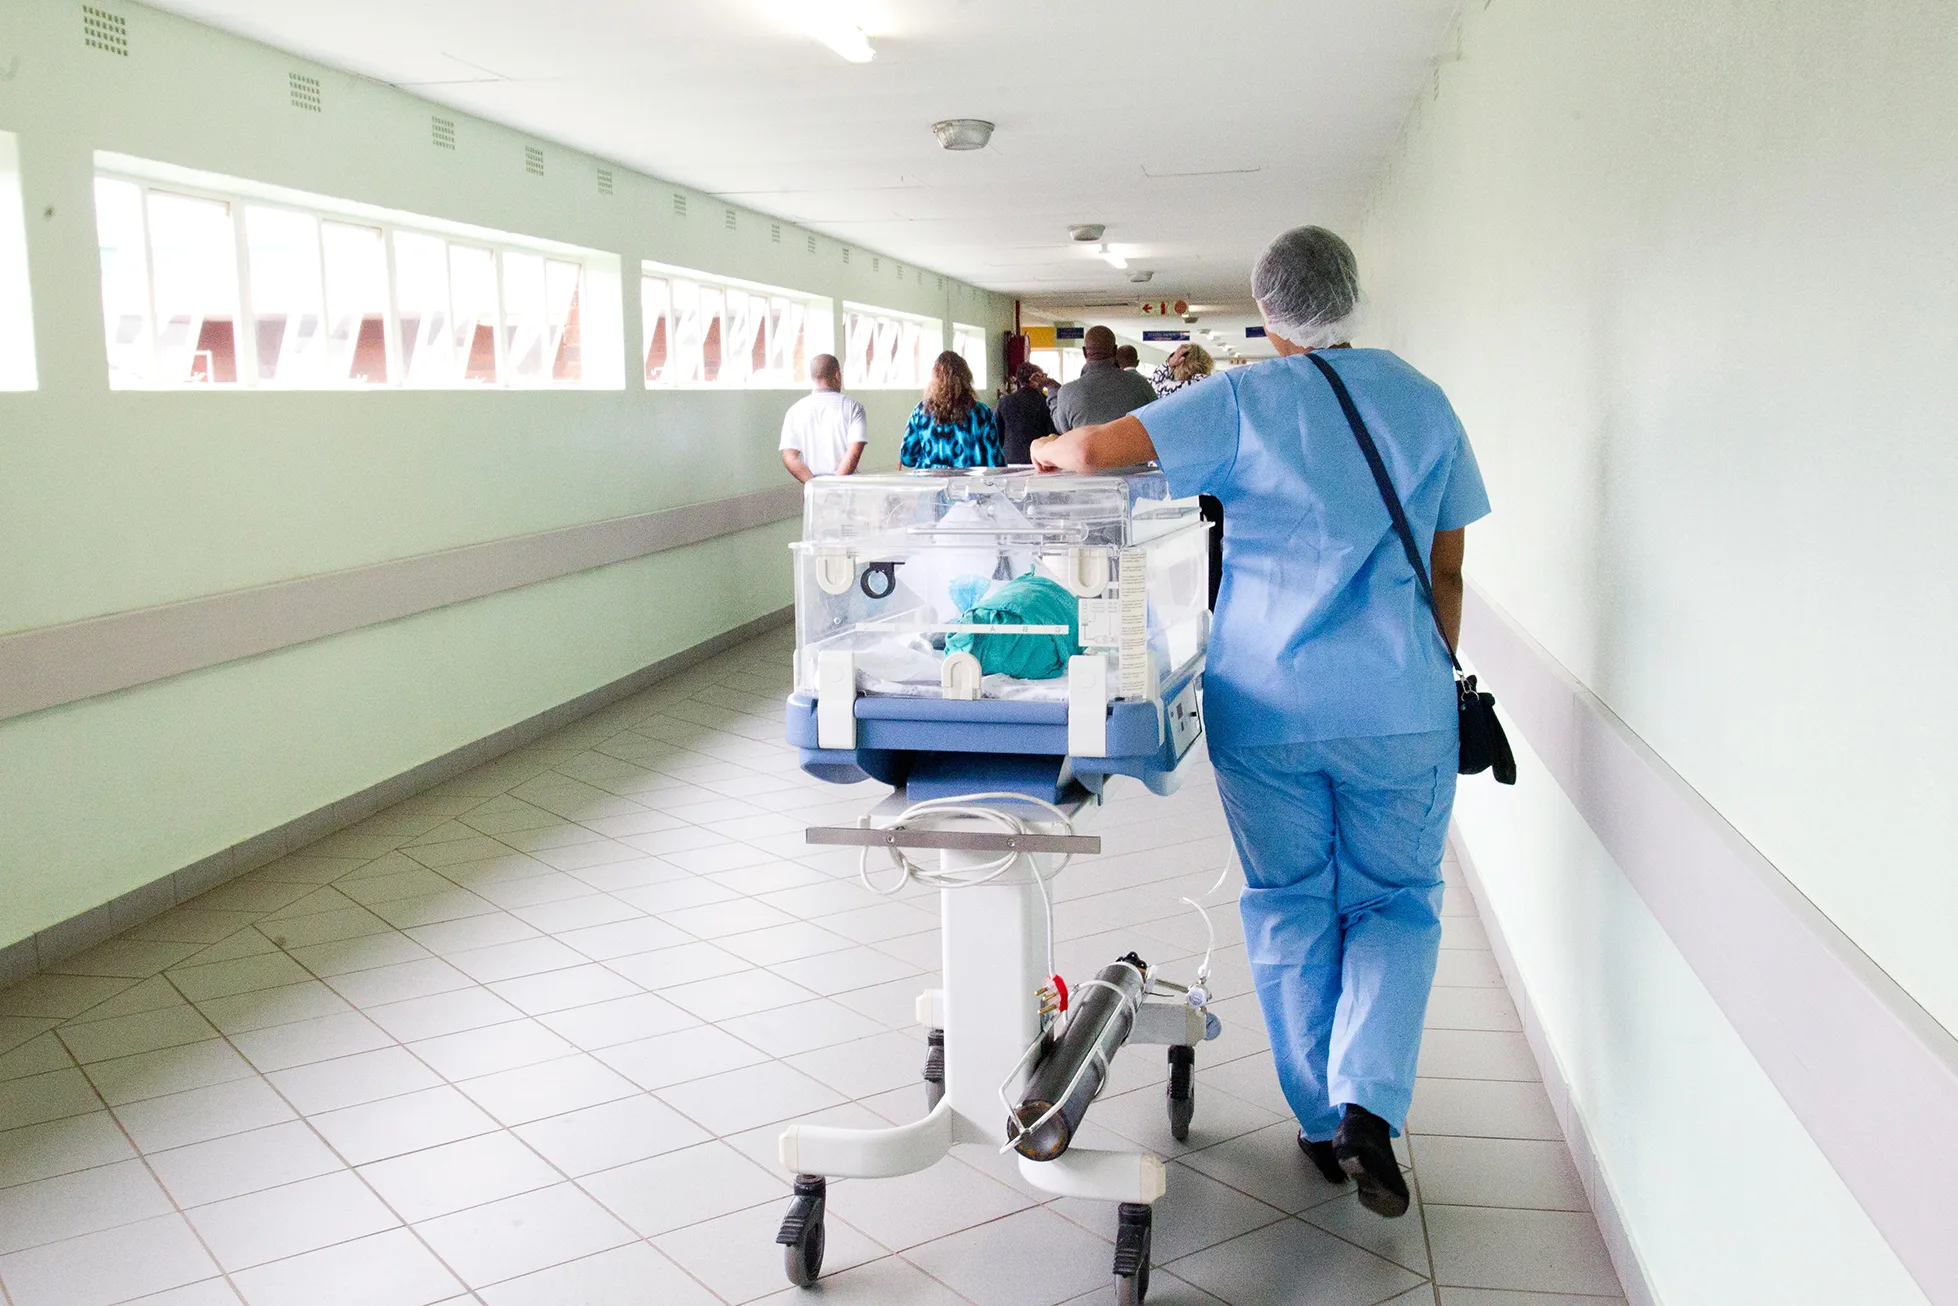 Dctors walking in hospital hallway